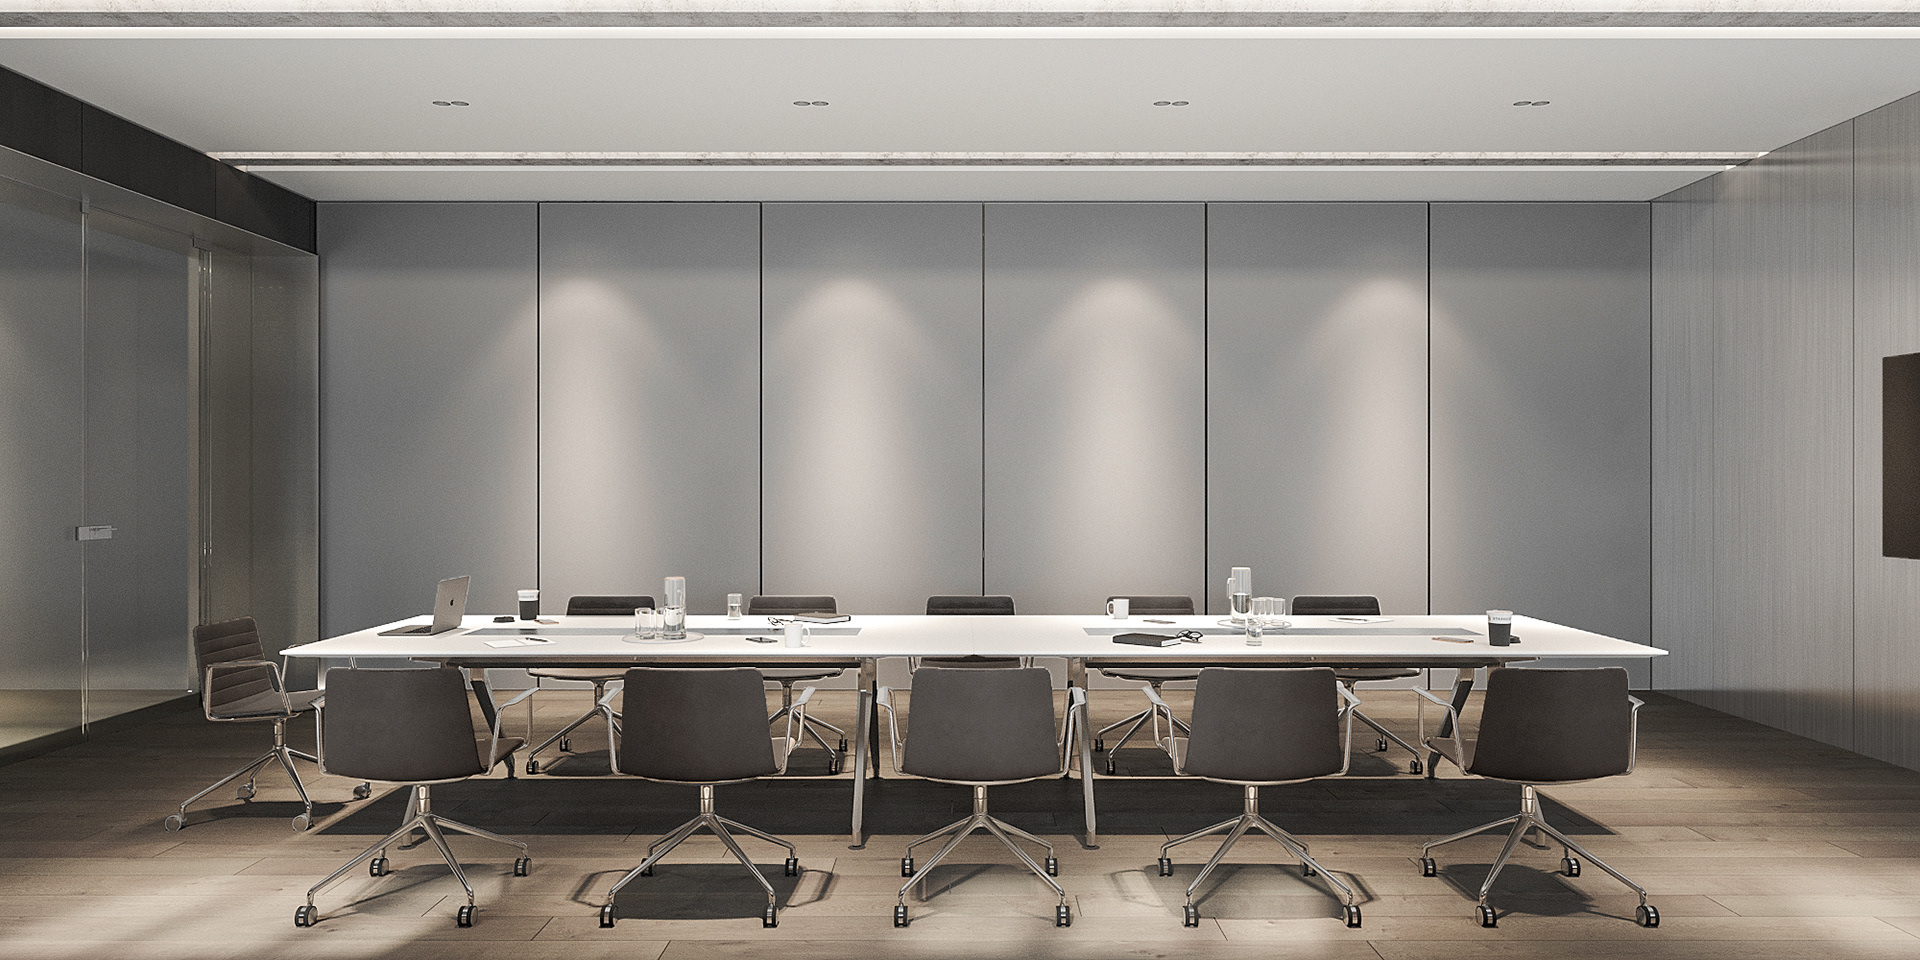 辦公室的會議室空間可以將隔間設計為可移動的隔間牆，不論是需要私密的會議空間還是開放式的形式都可以